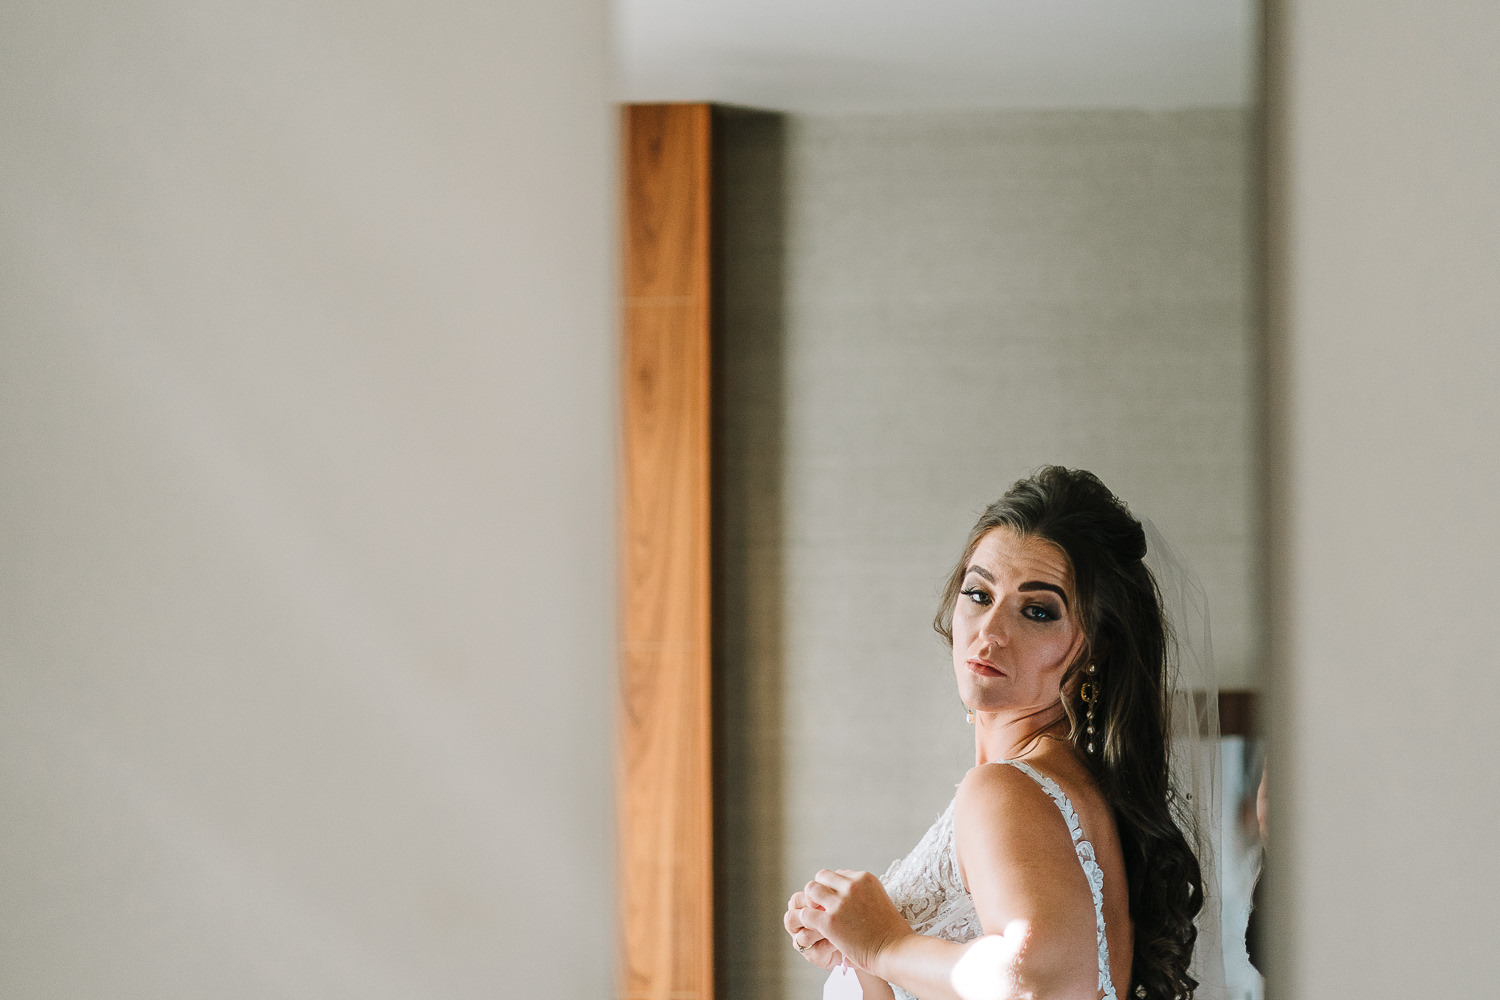 Bride looking in mirror